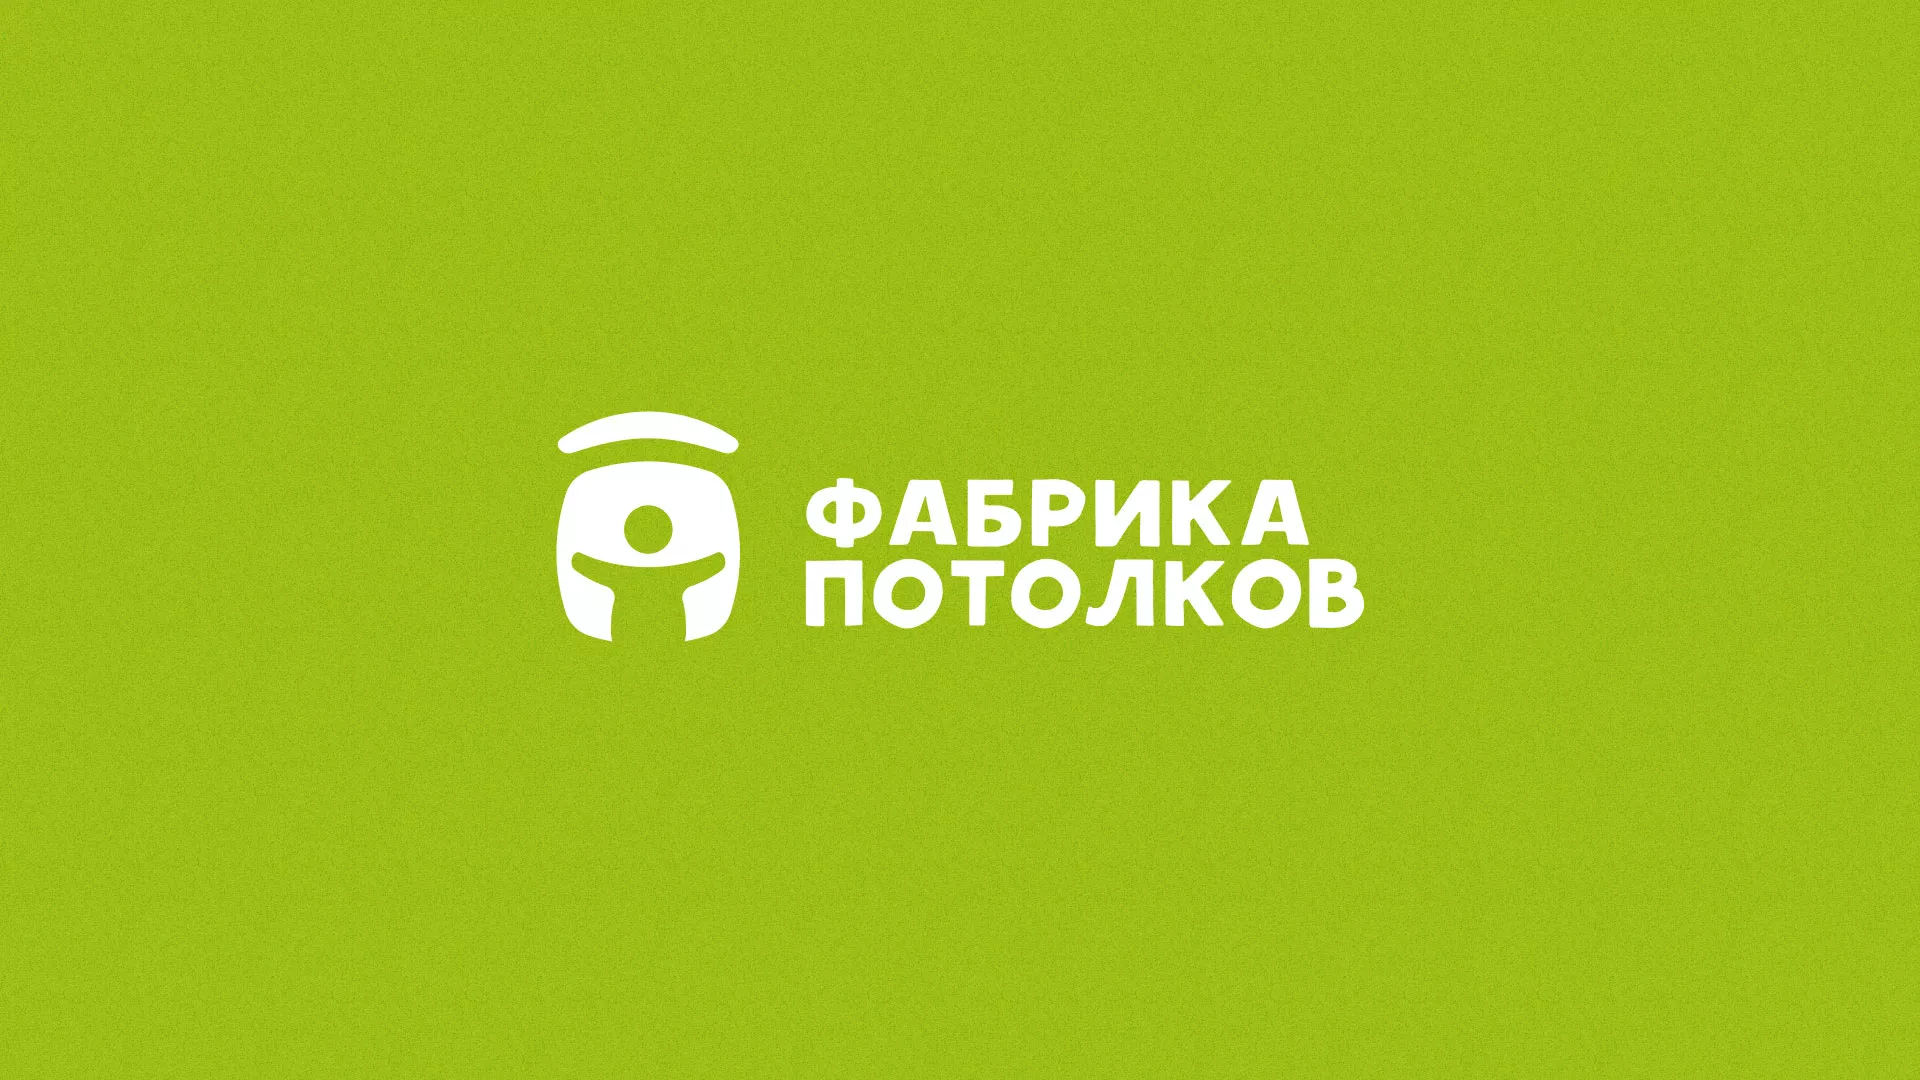 Разработка логотипа для производства натяжных потолков в Казани